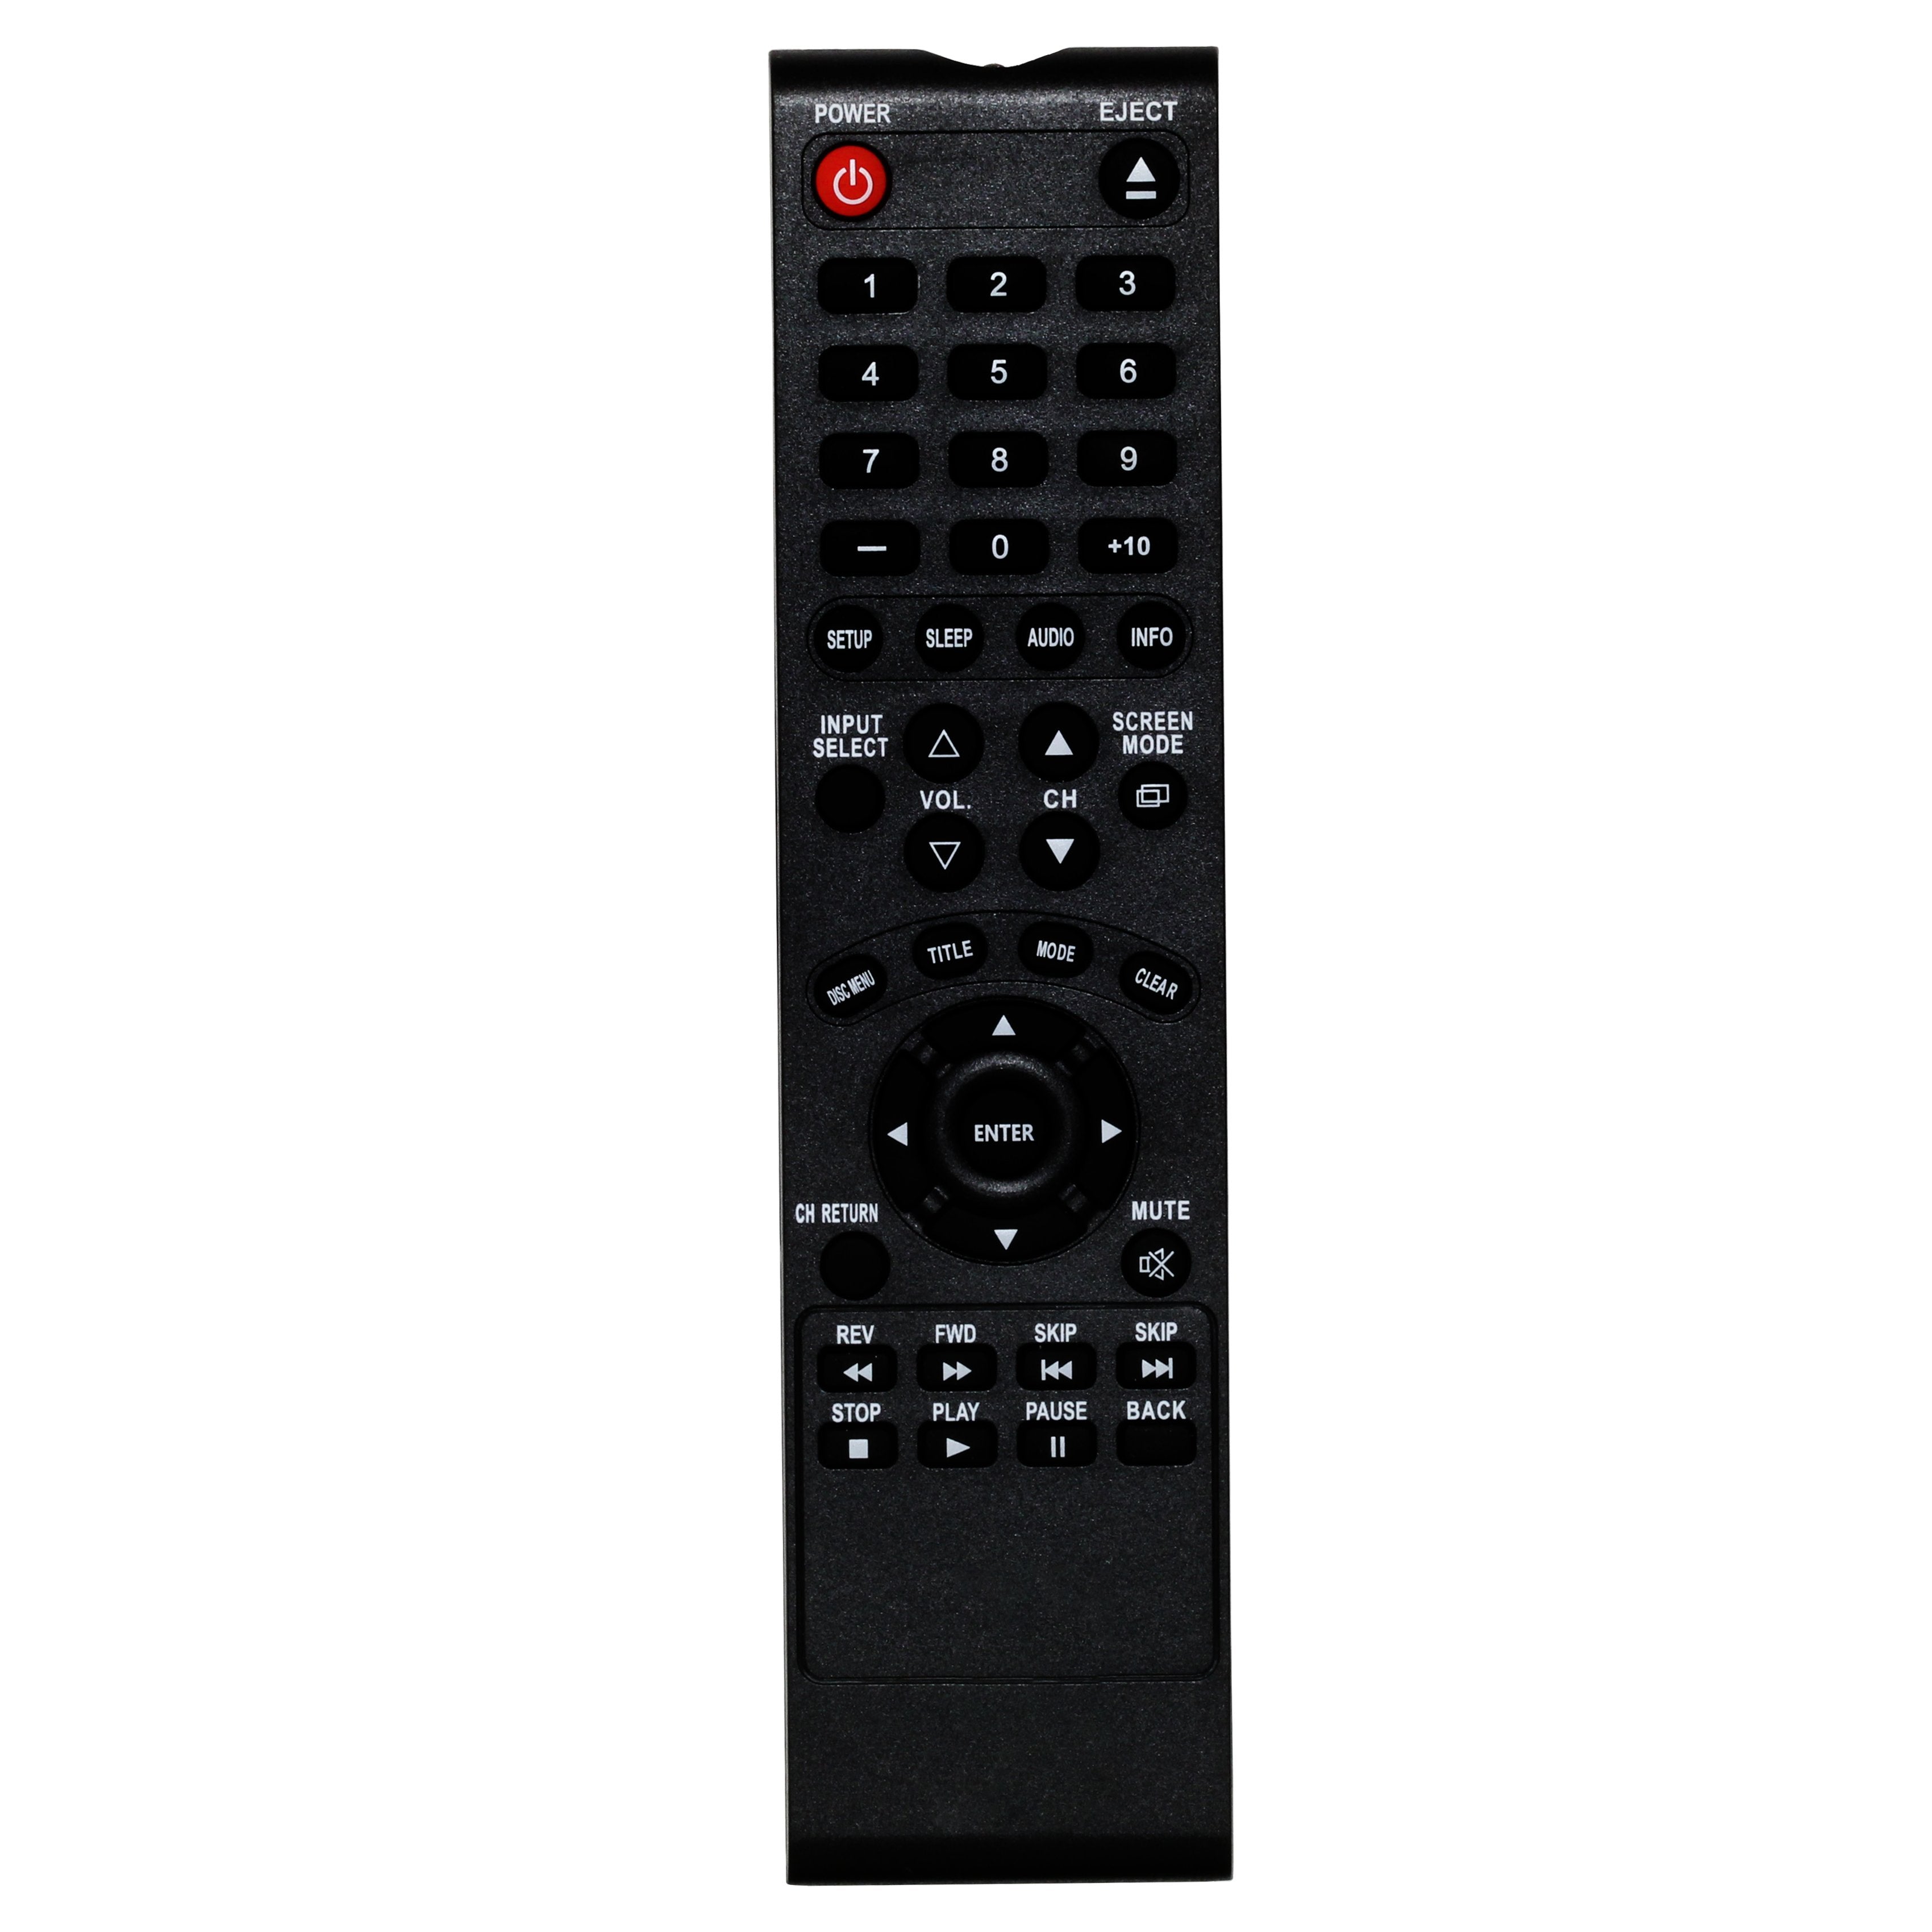 Sylvania RPK971AK02  TV Remote